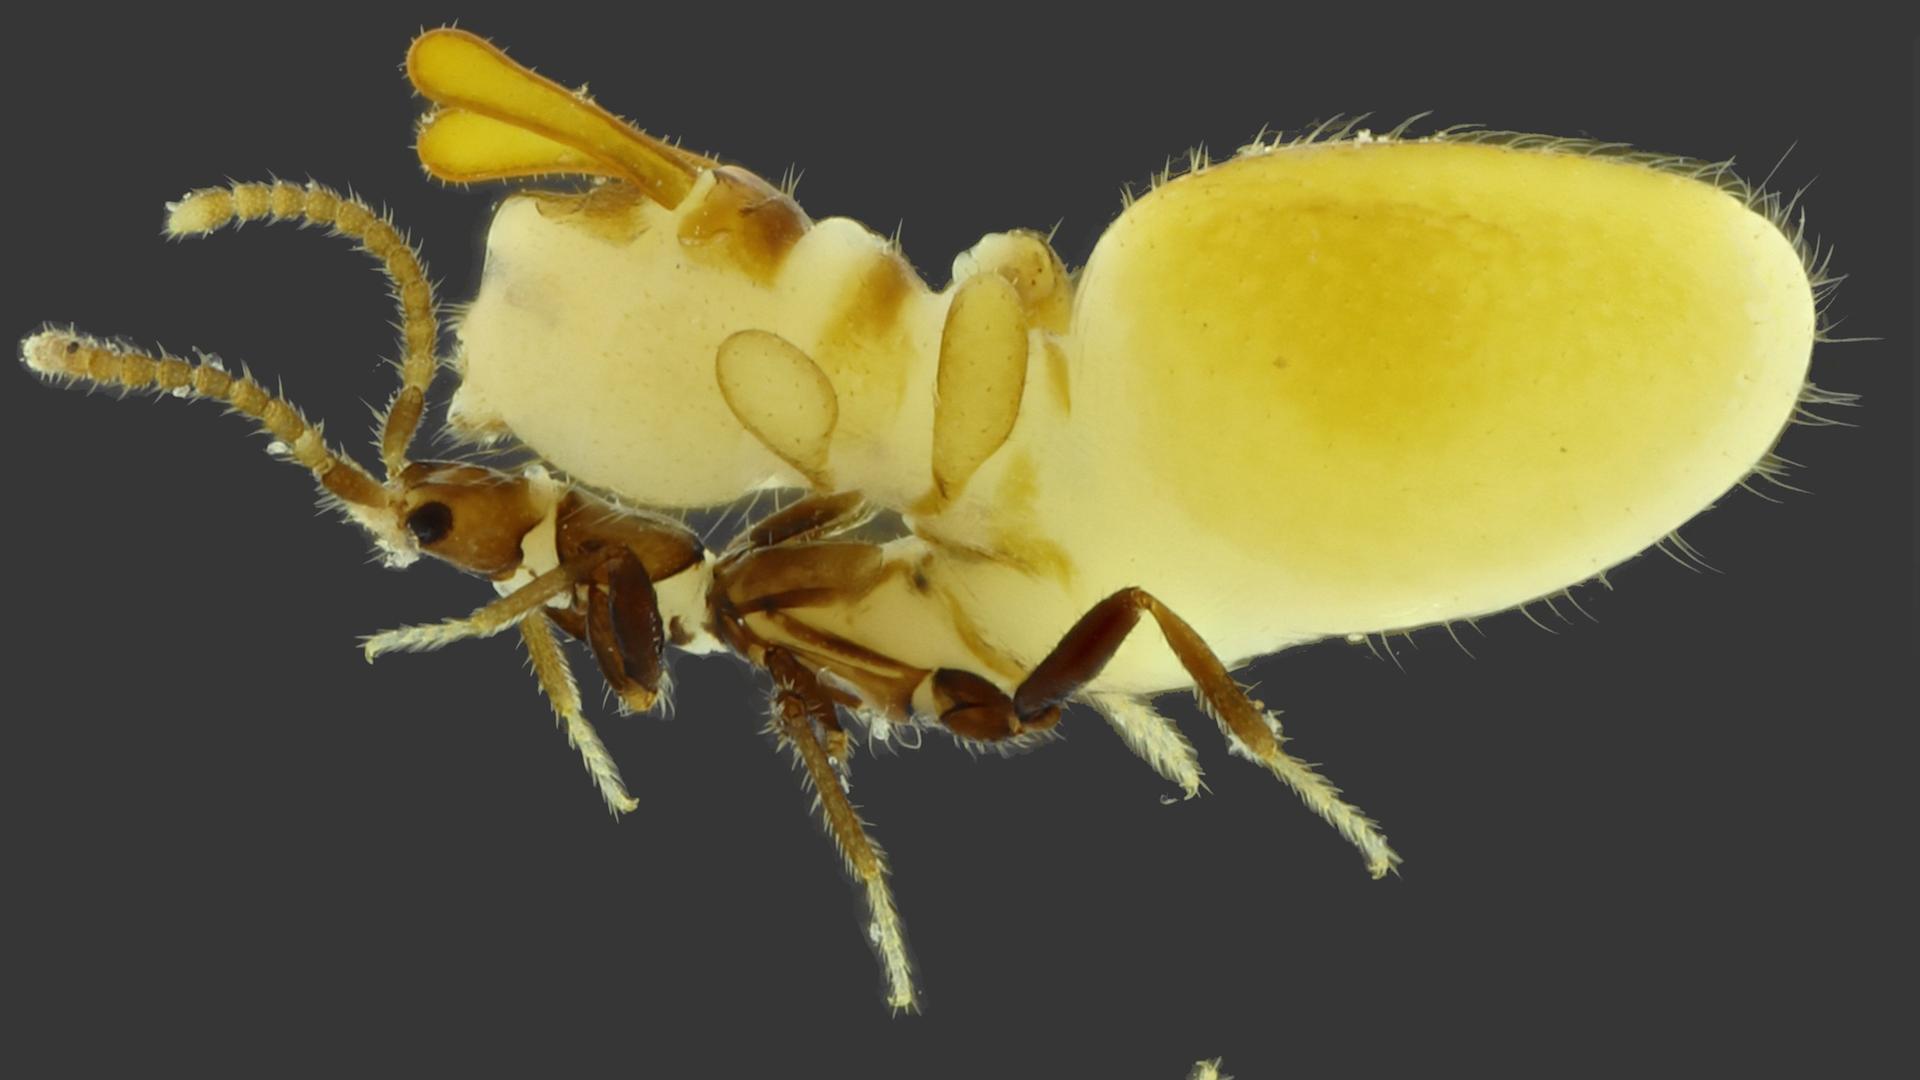 Dieser Käfer trägt eine gelbe Termiten-Attrappe auf dem Rücken.